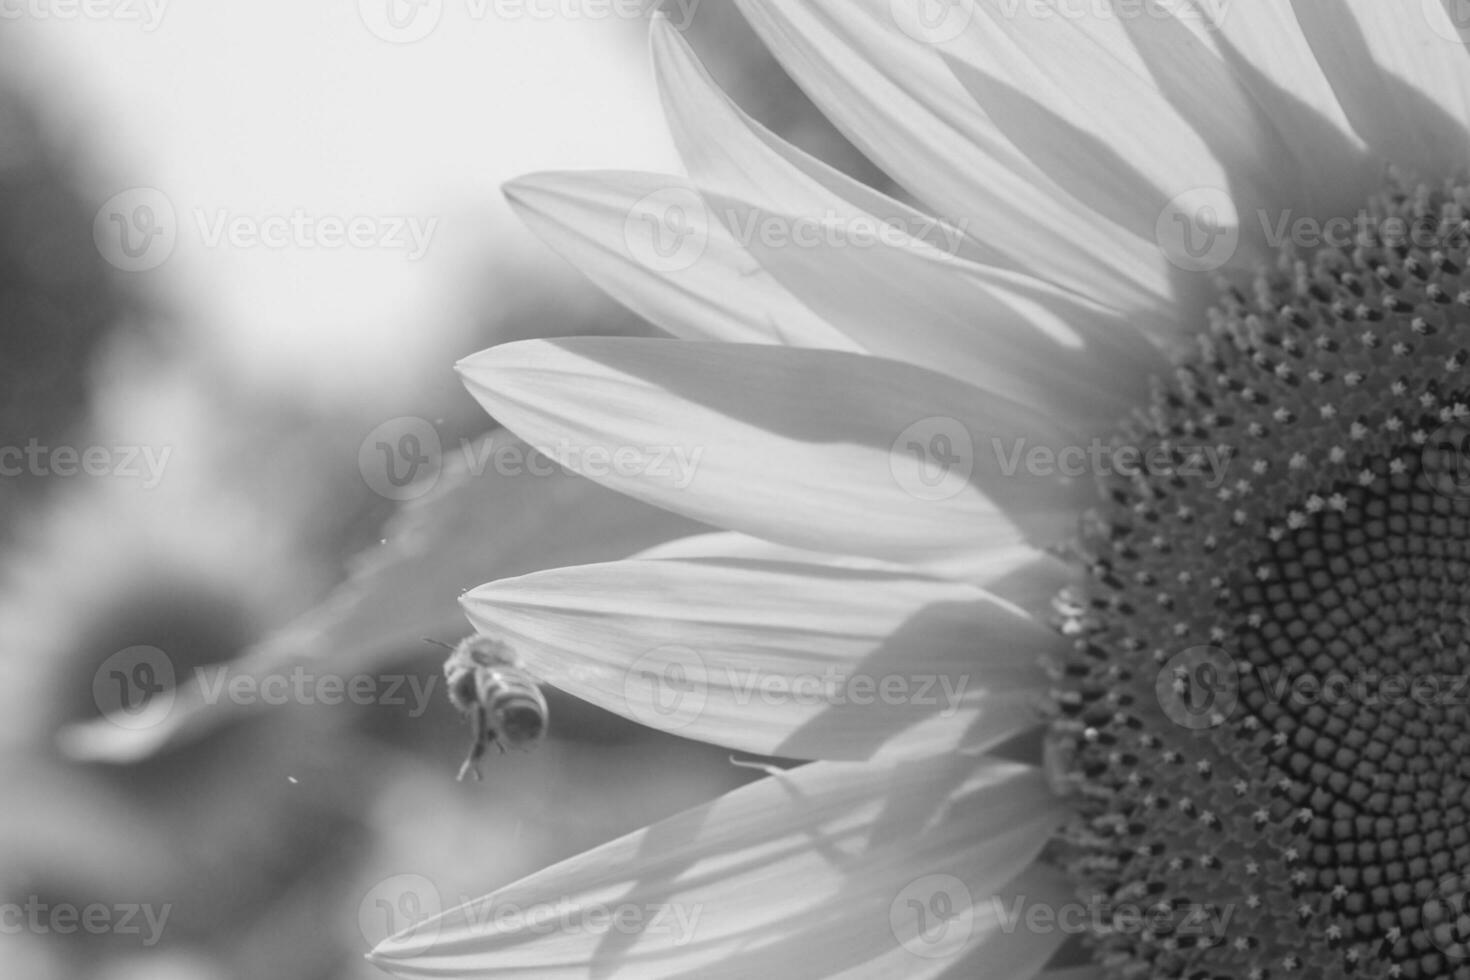 abelha selvagem em flor com néctar de girassol no campo foto